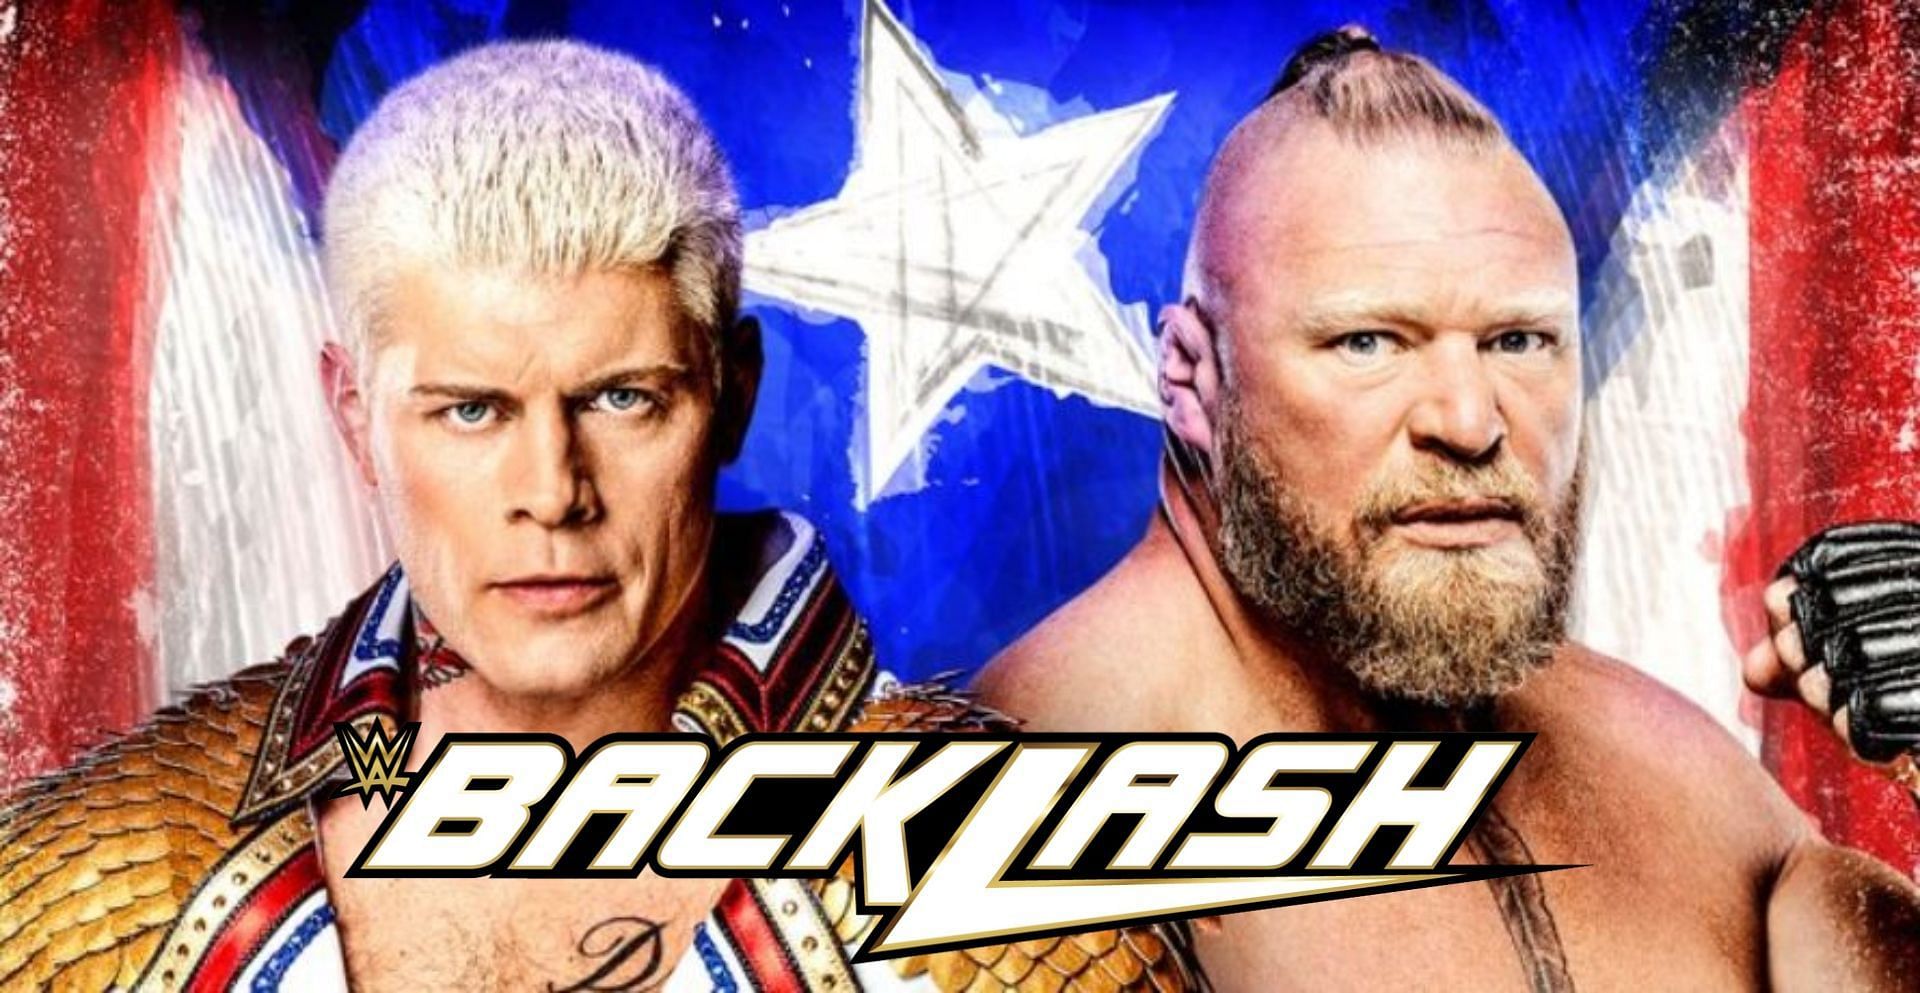 Cody Rhodes defeated Brock Lesnar at Backlash. 